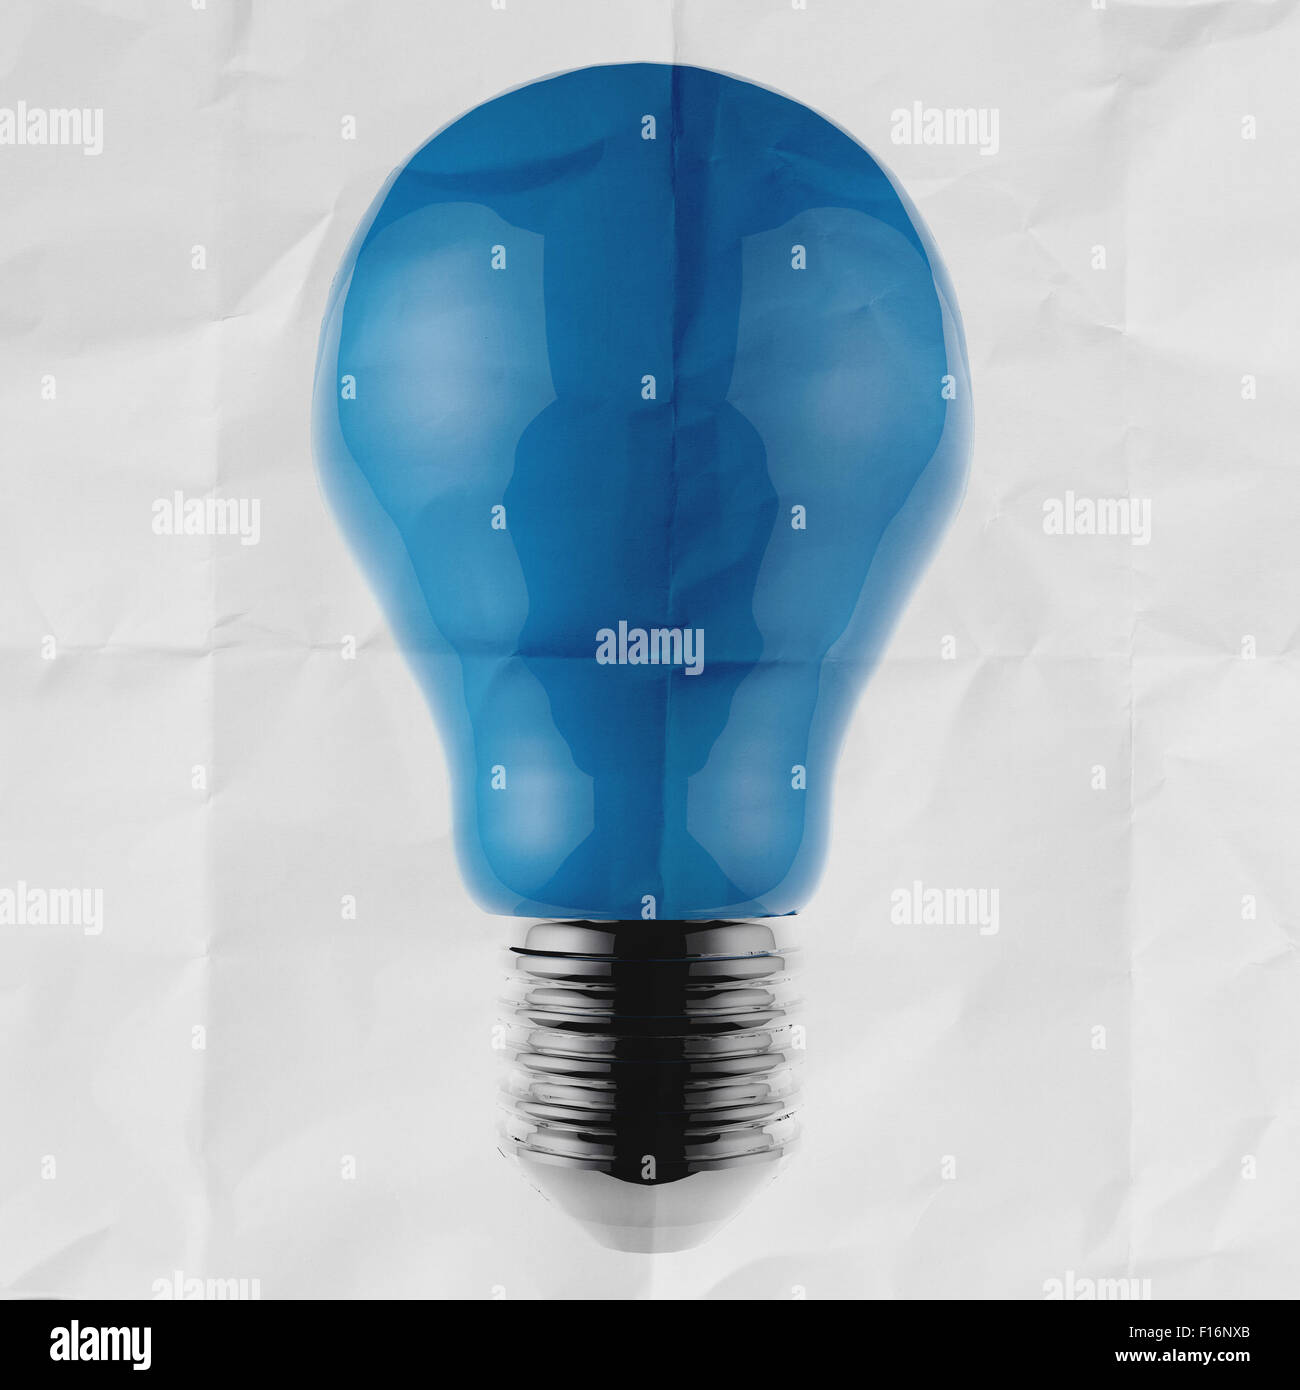 Ampoule bleue 3d sur papier froissé comme concept créatif Banque D'Images